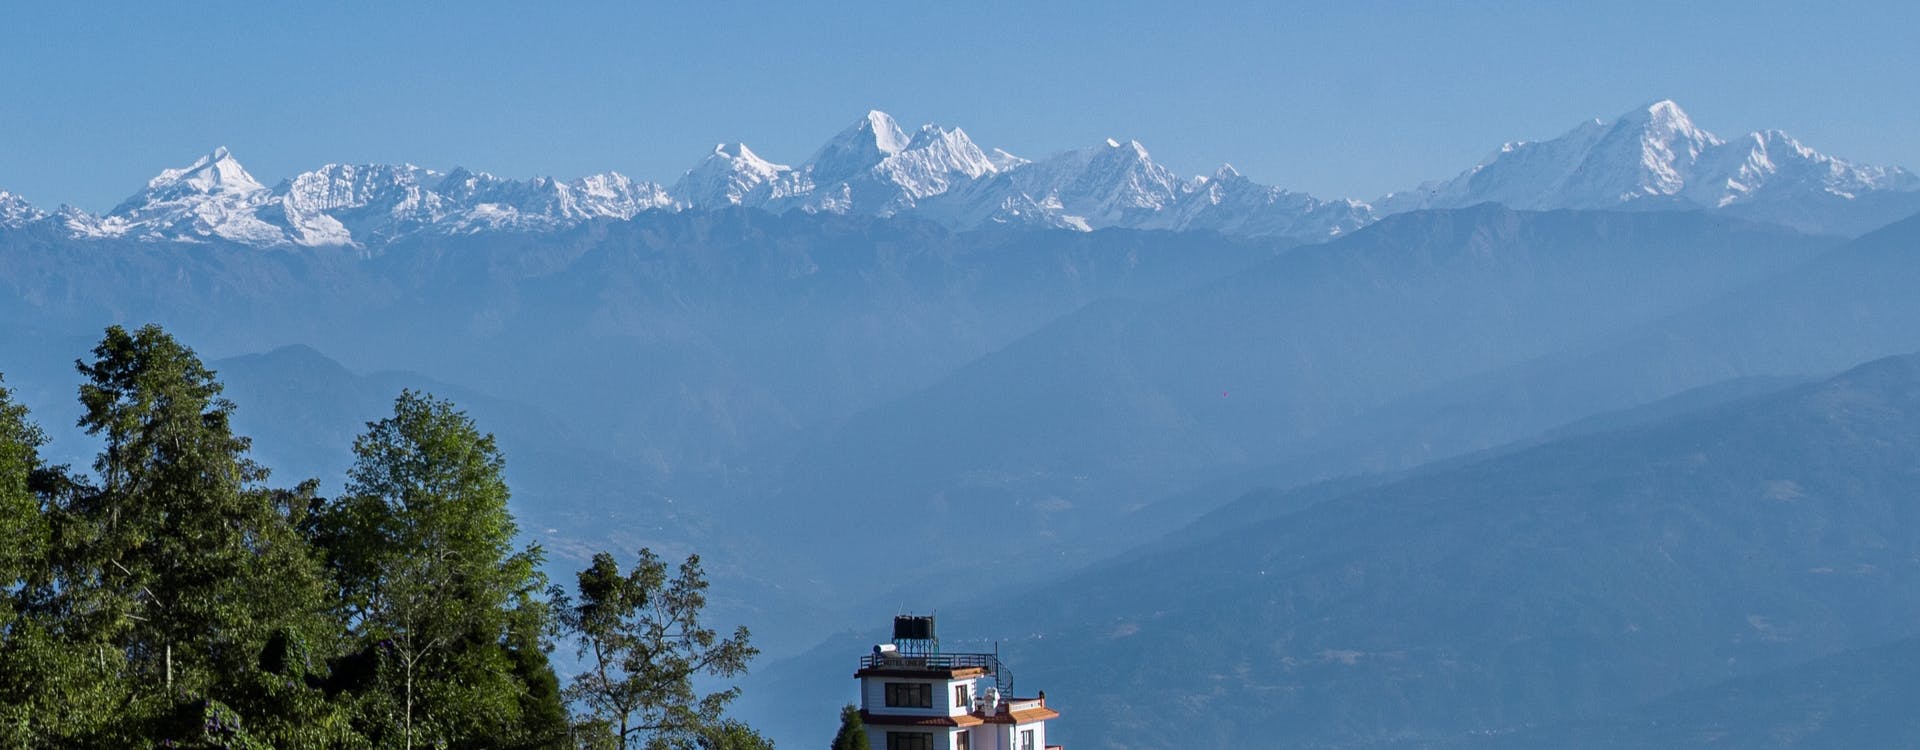 kathmandu nagarkot sightseeing tour